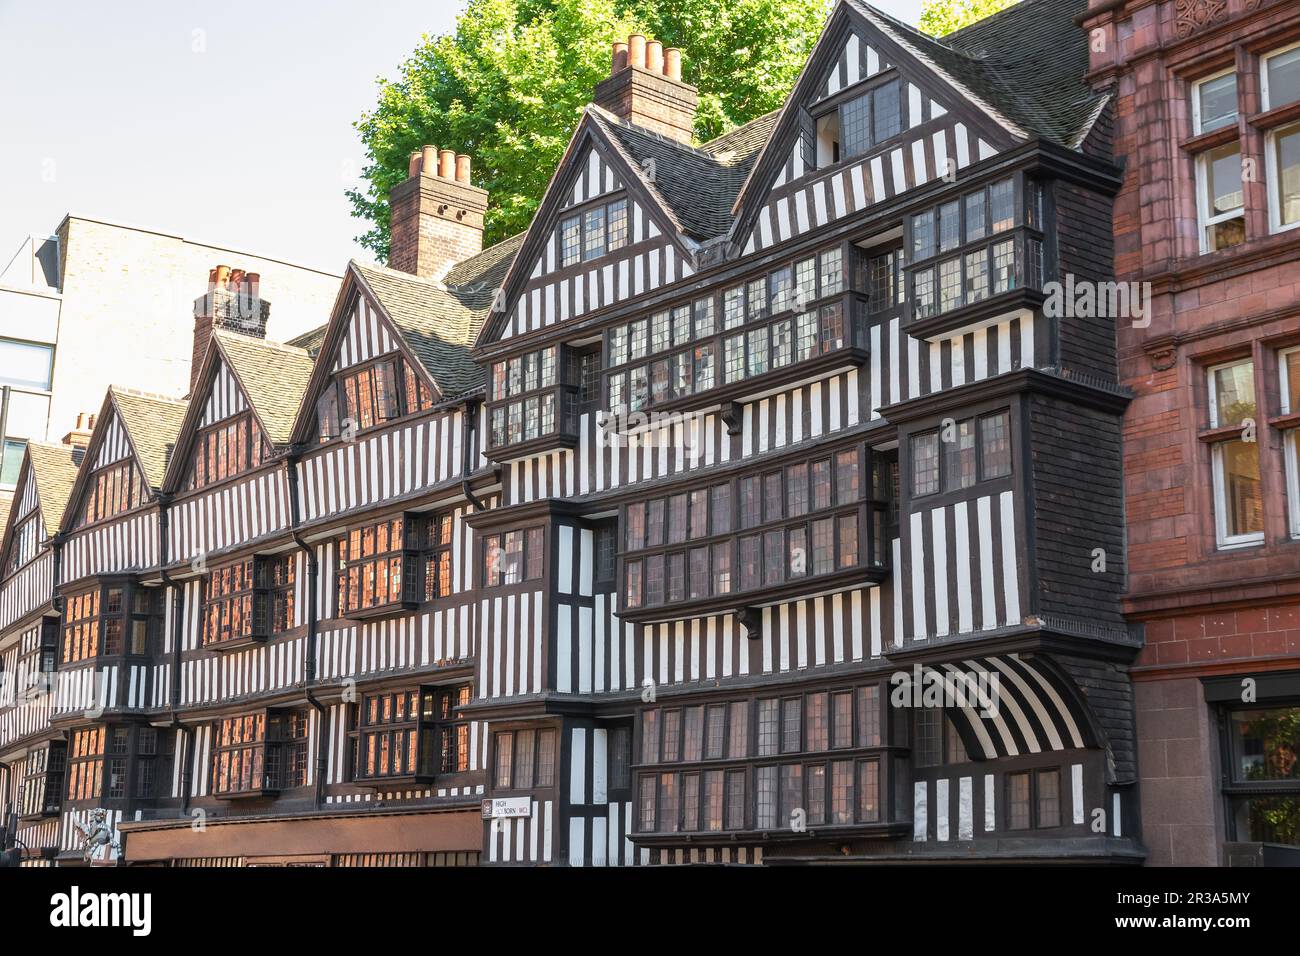 Staple Inn, ein Tudor-Gebäude, Teil des mittelalterlichen London, das den großen Brand von London überlebt hat Stockfoto